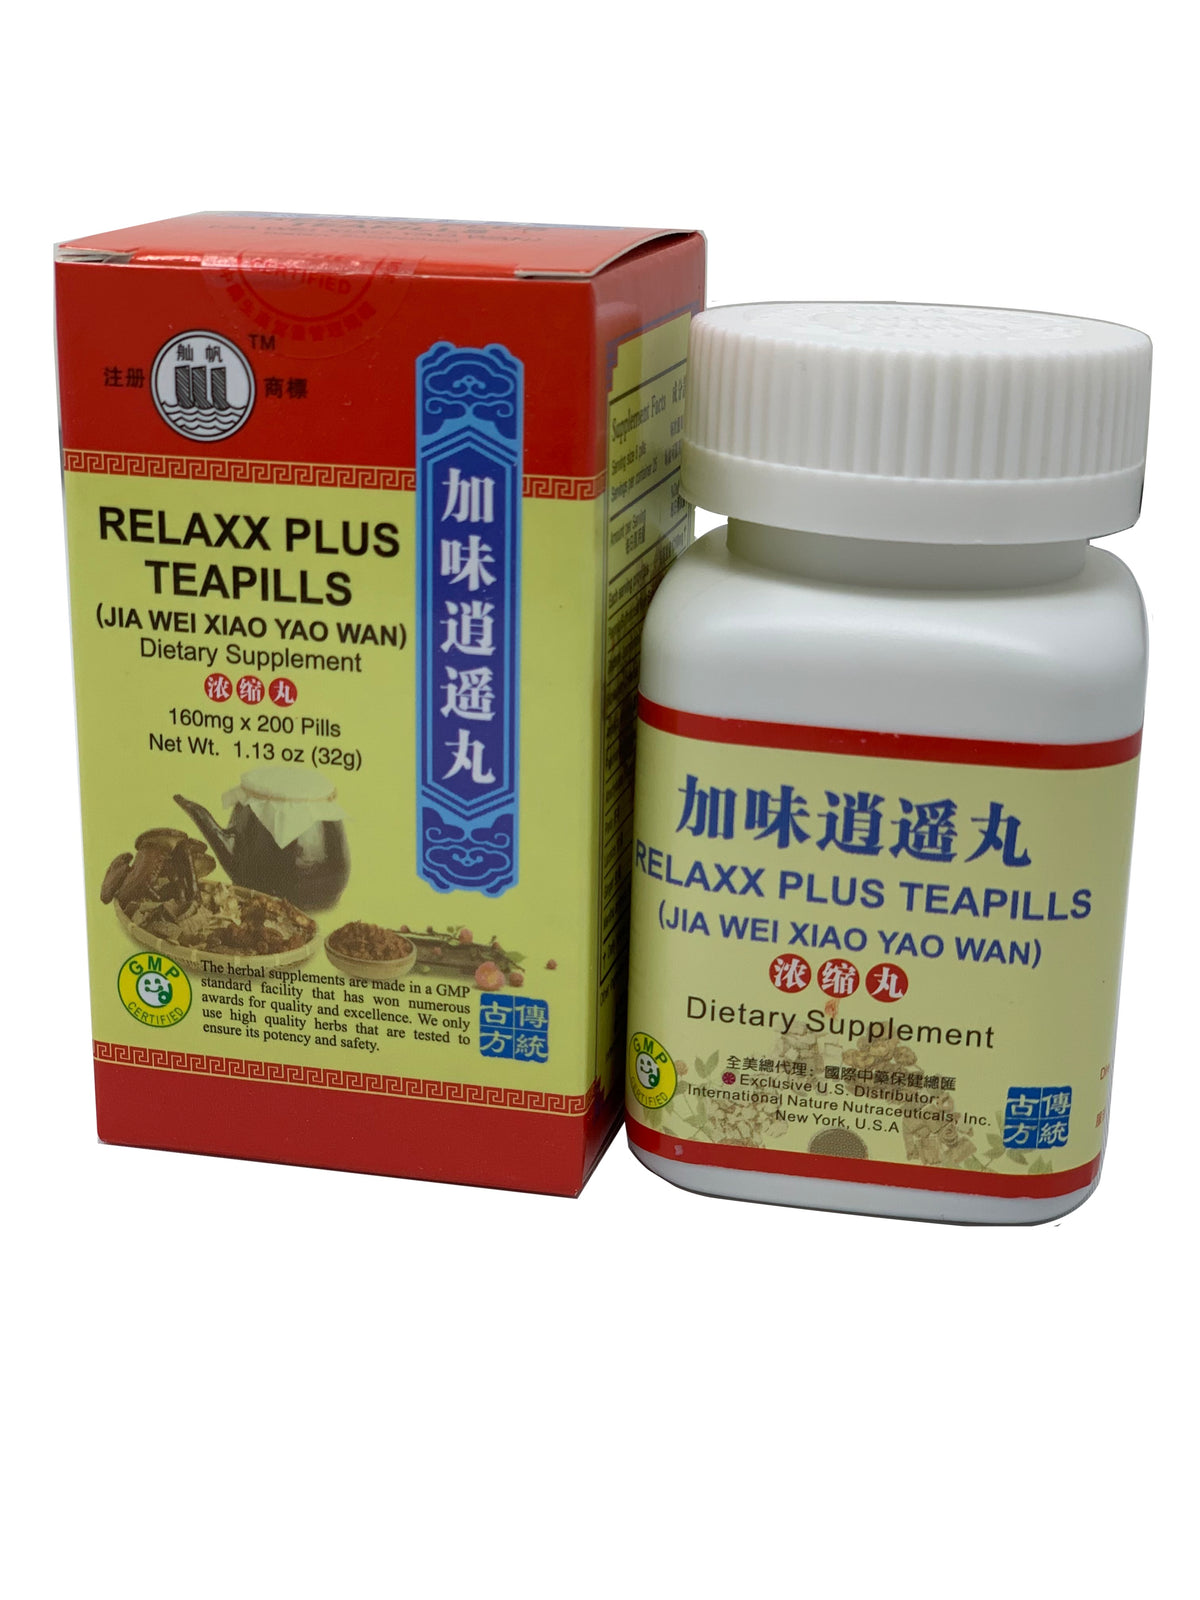 Relaxx Plus TeaPills (Jia Wei Xiao Yao Wan)